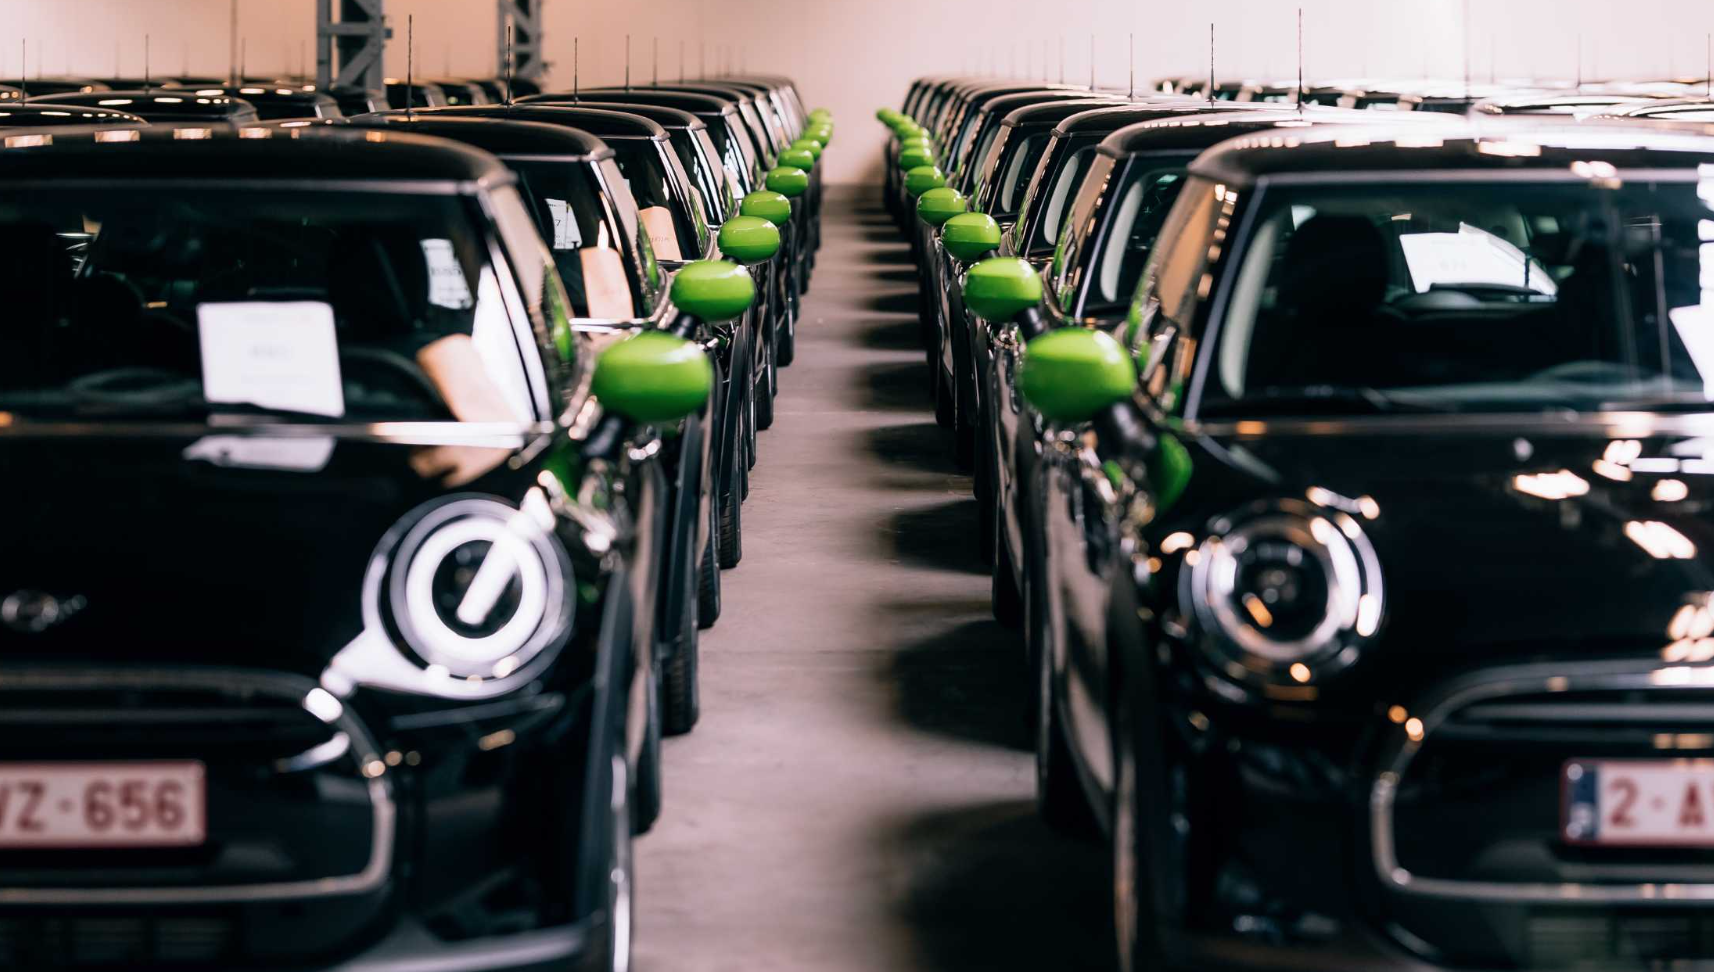 Deloitte bestelt 140 elektrische Mini's voor zijn bedrijfswagenpark